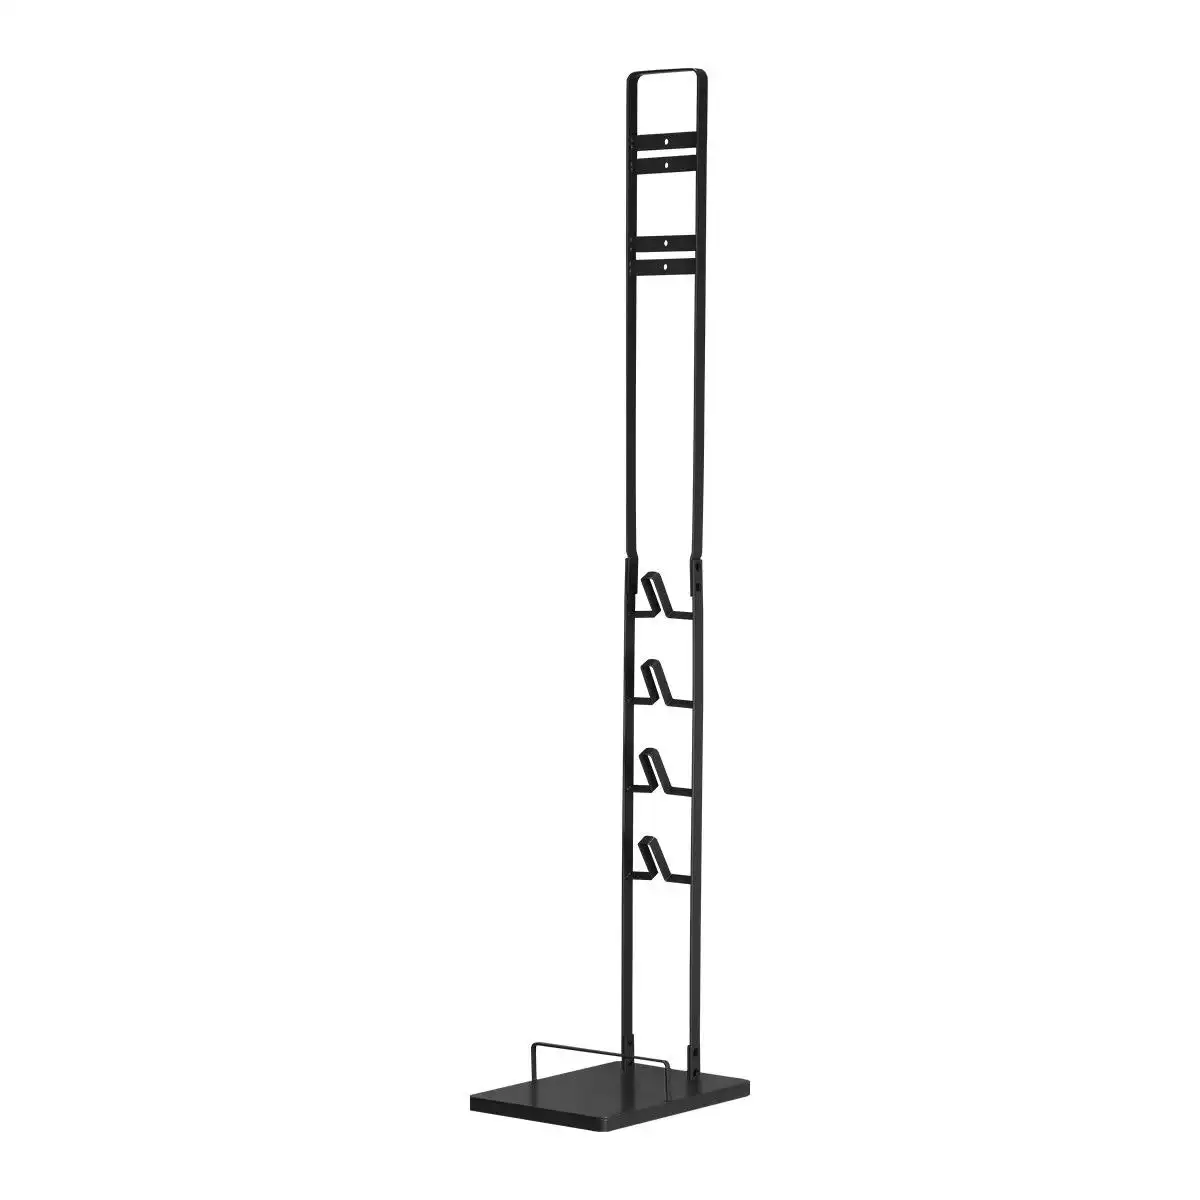 Ausway Dyson Vacuum Stand Rack Cleaner Accessories Holder Free Standing V6 V7 V8 V10 V11 V12 V15 Black